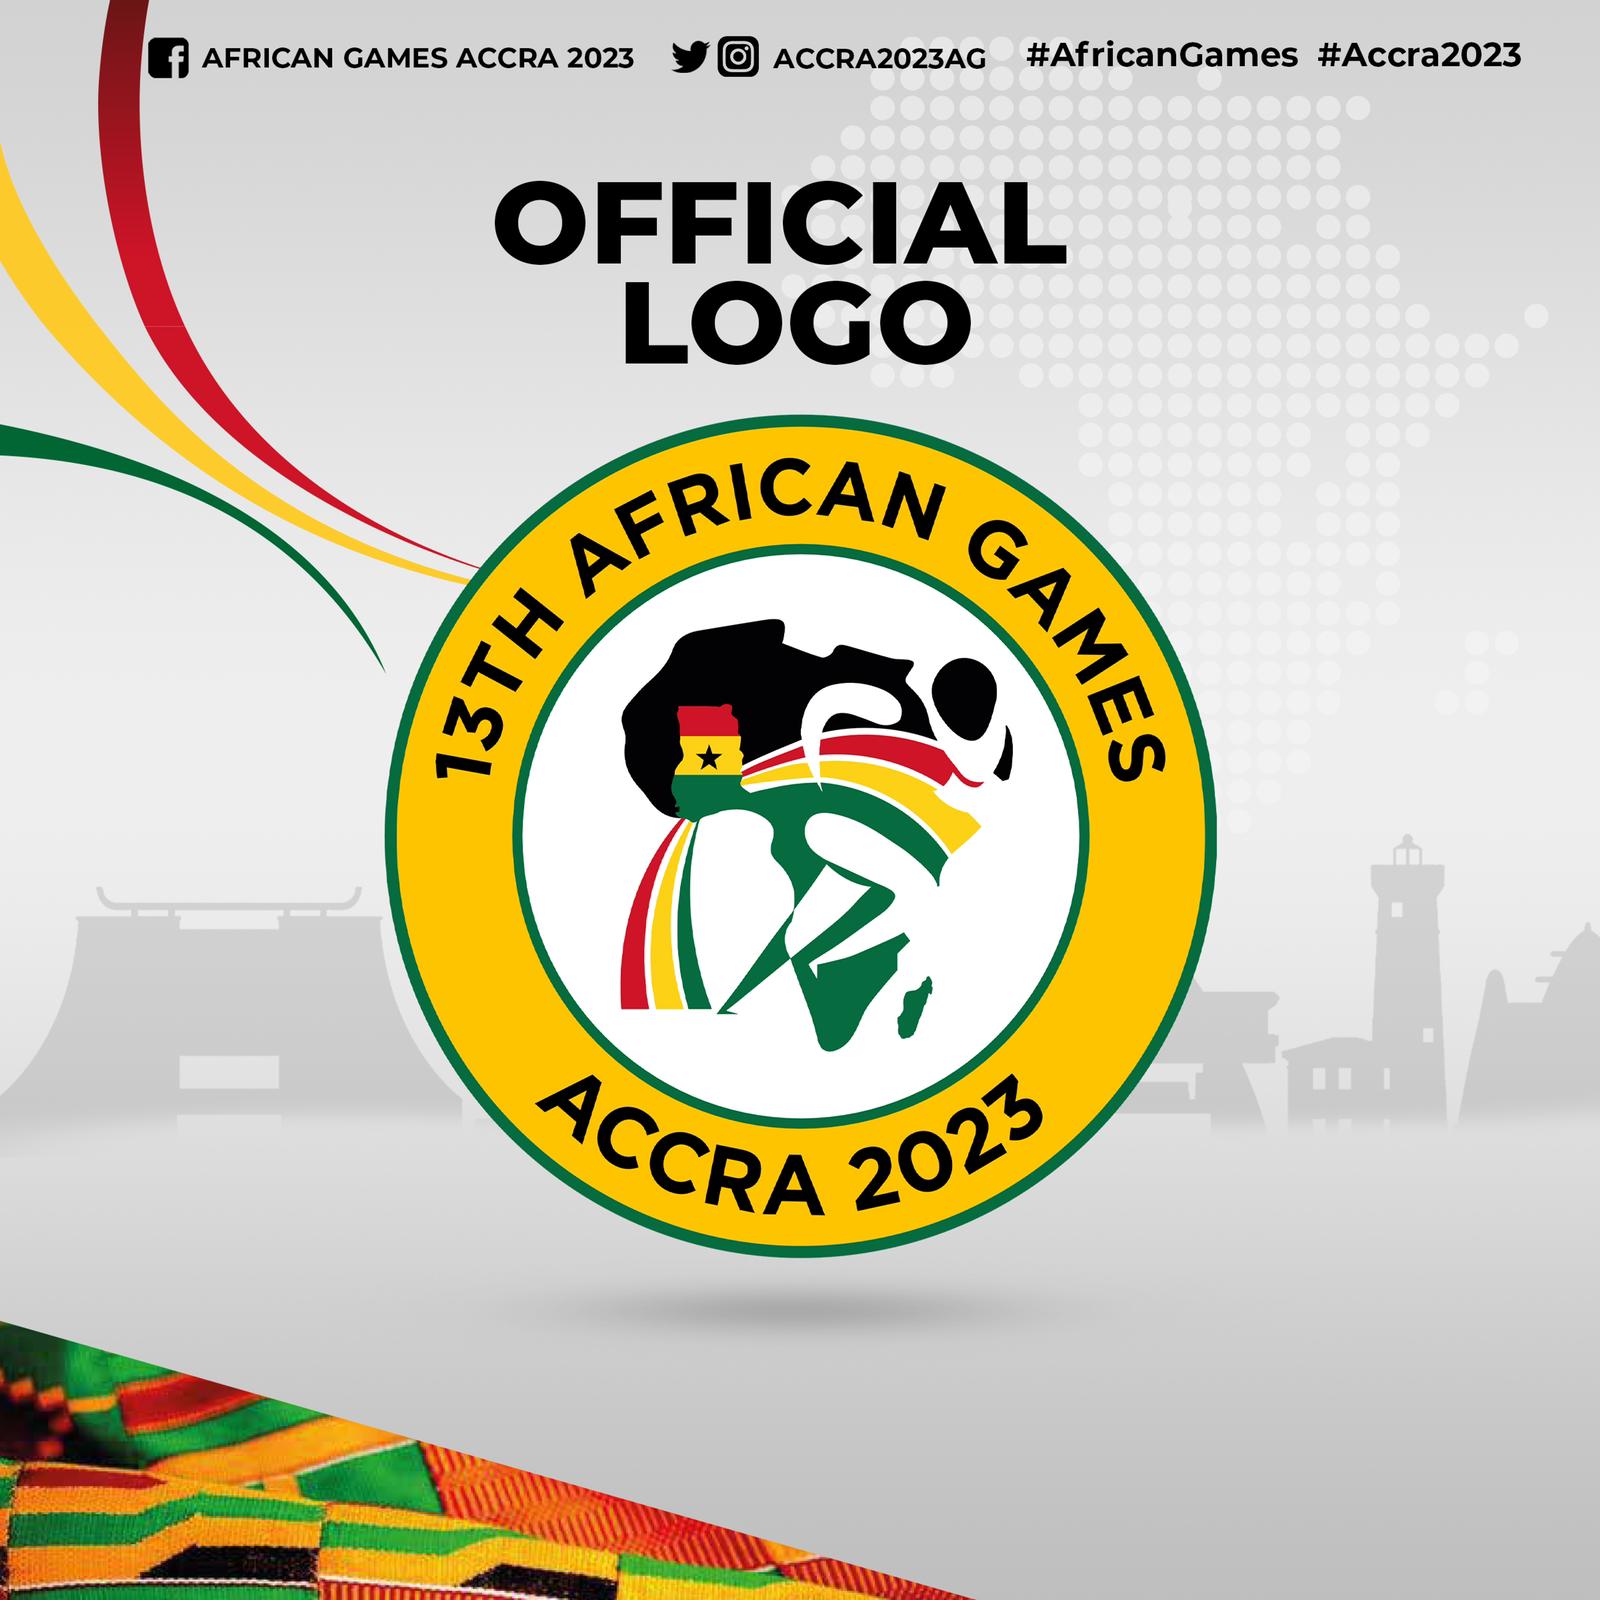 https://www.thebrewshow.net/wp-content/uploads/2022/01/13th-African-Games-Logo.jpg